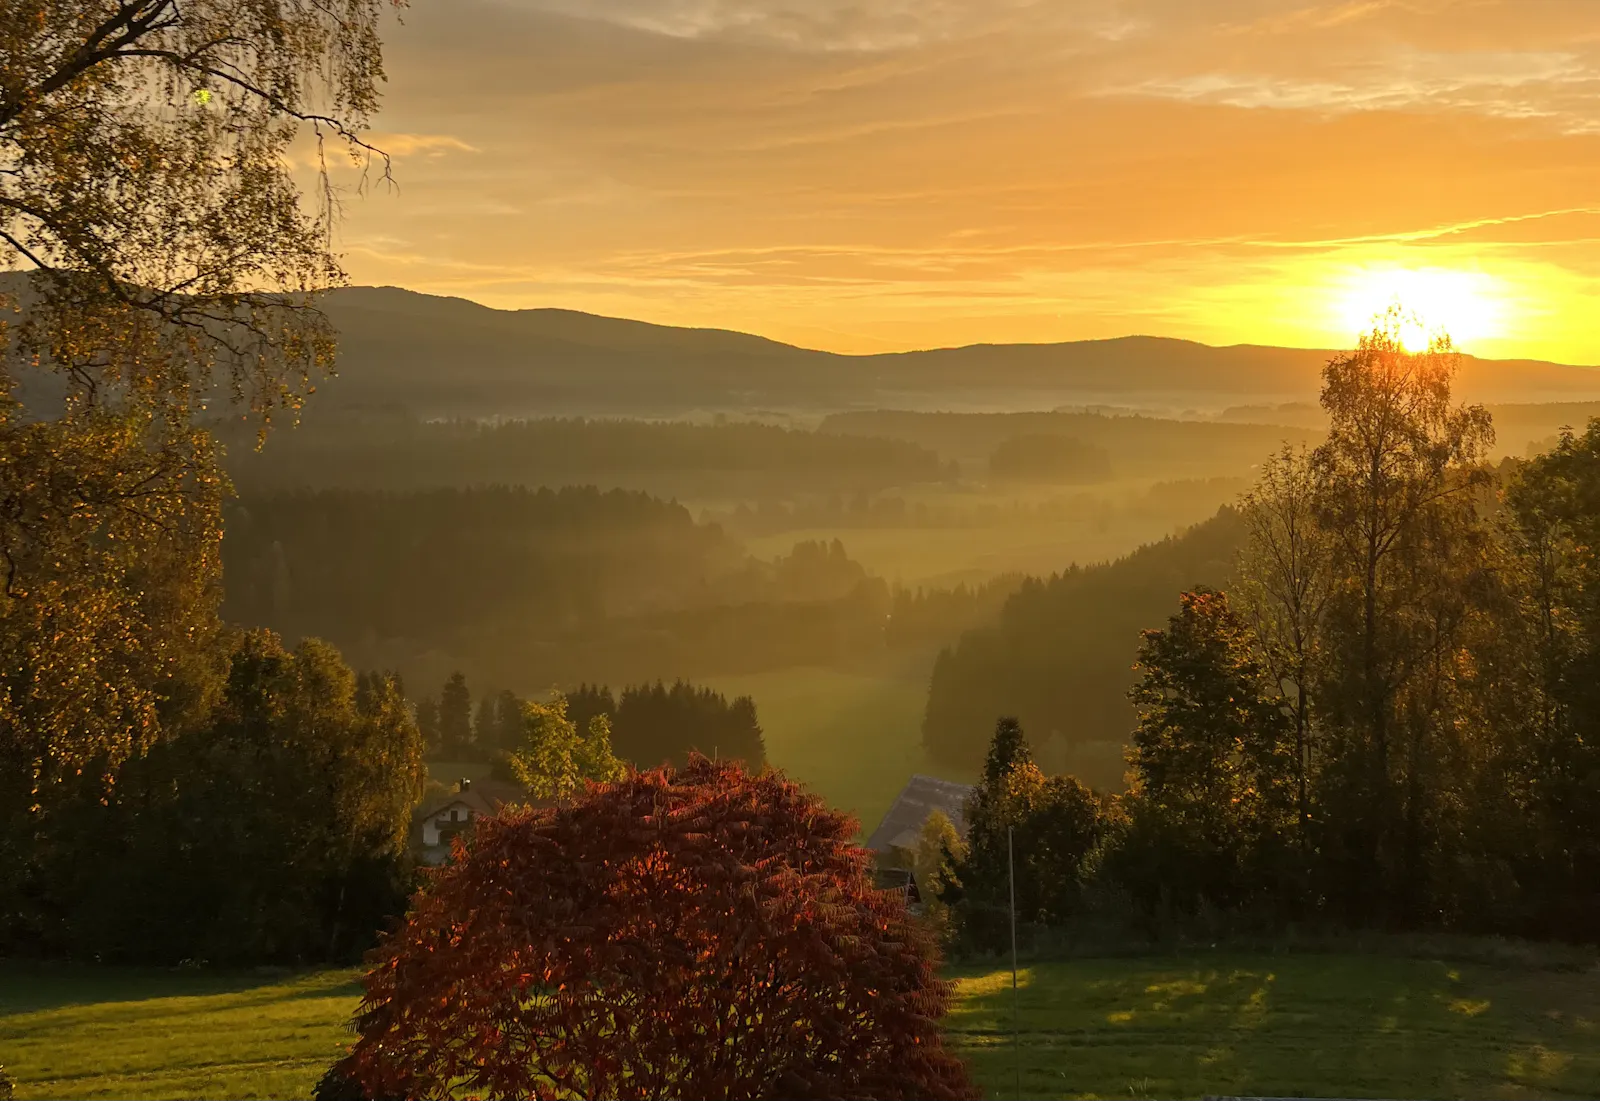 Blick aus der Villa Breitenberg im Bayerischen Wald, dem Ort des zurückliegenden Workshops